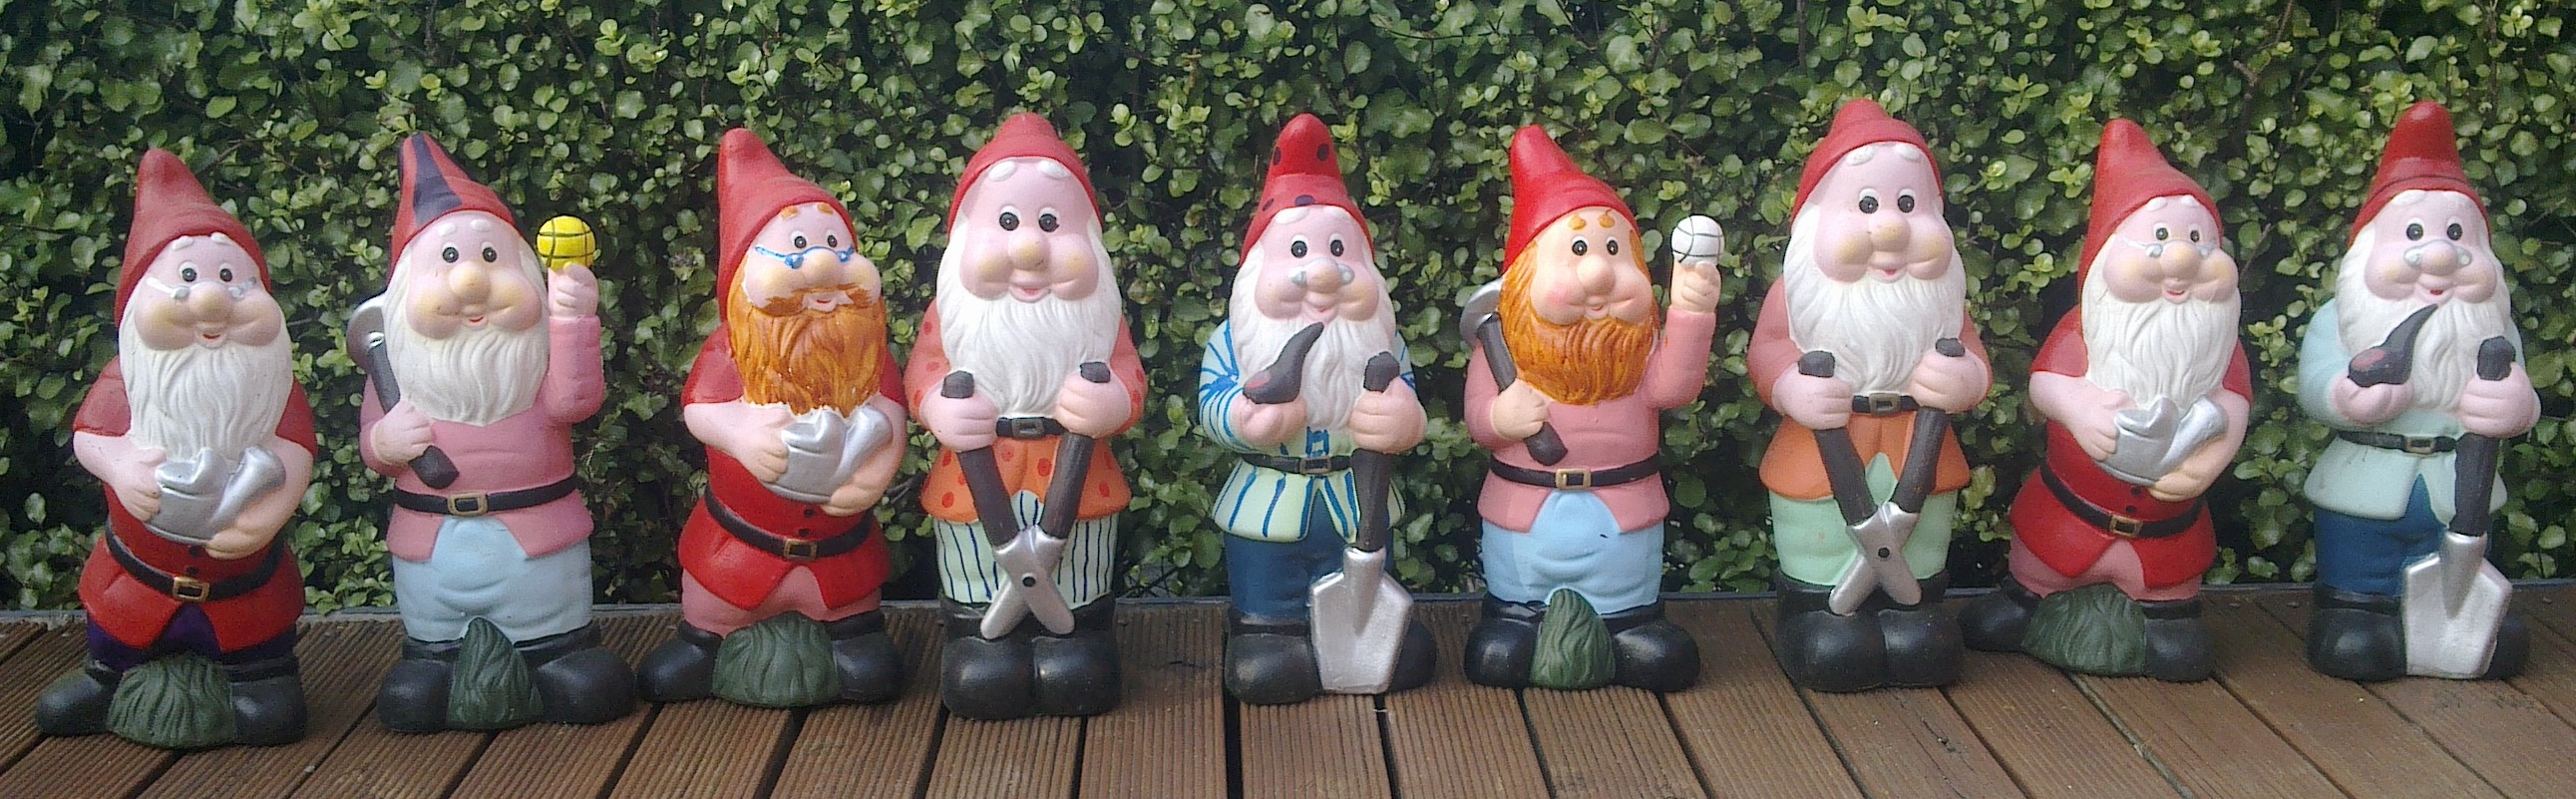 garden gnome family